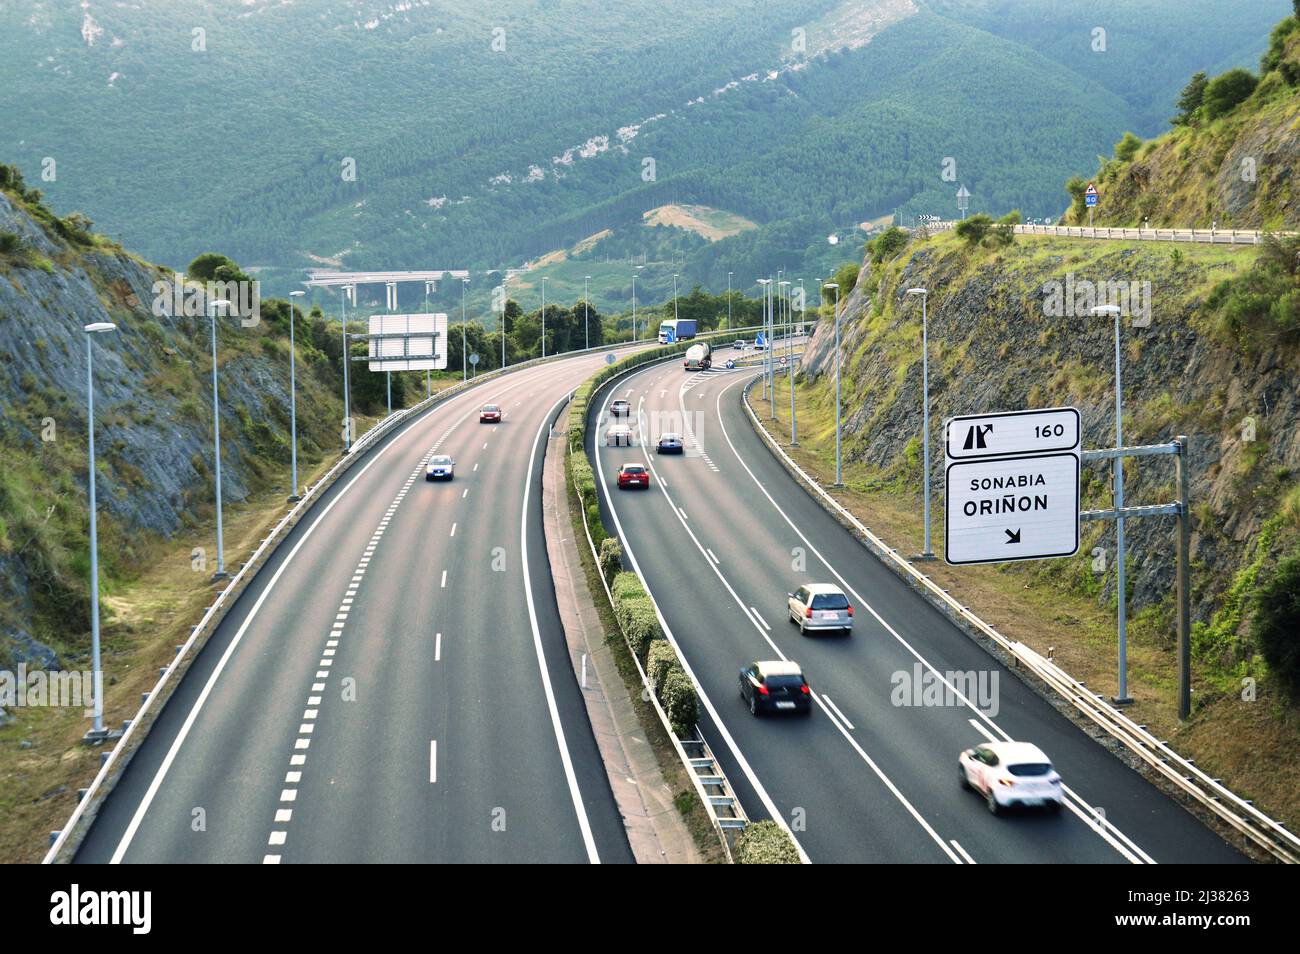 Autovía del Cantábrico - A8, autoroute principale de la région de Cantabrie, dans le nord de l'Espagne. Banque D'Images